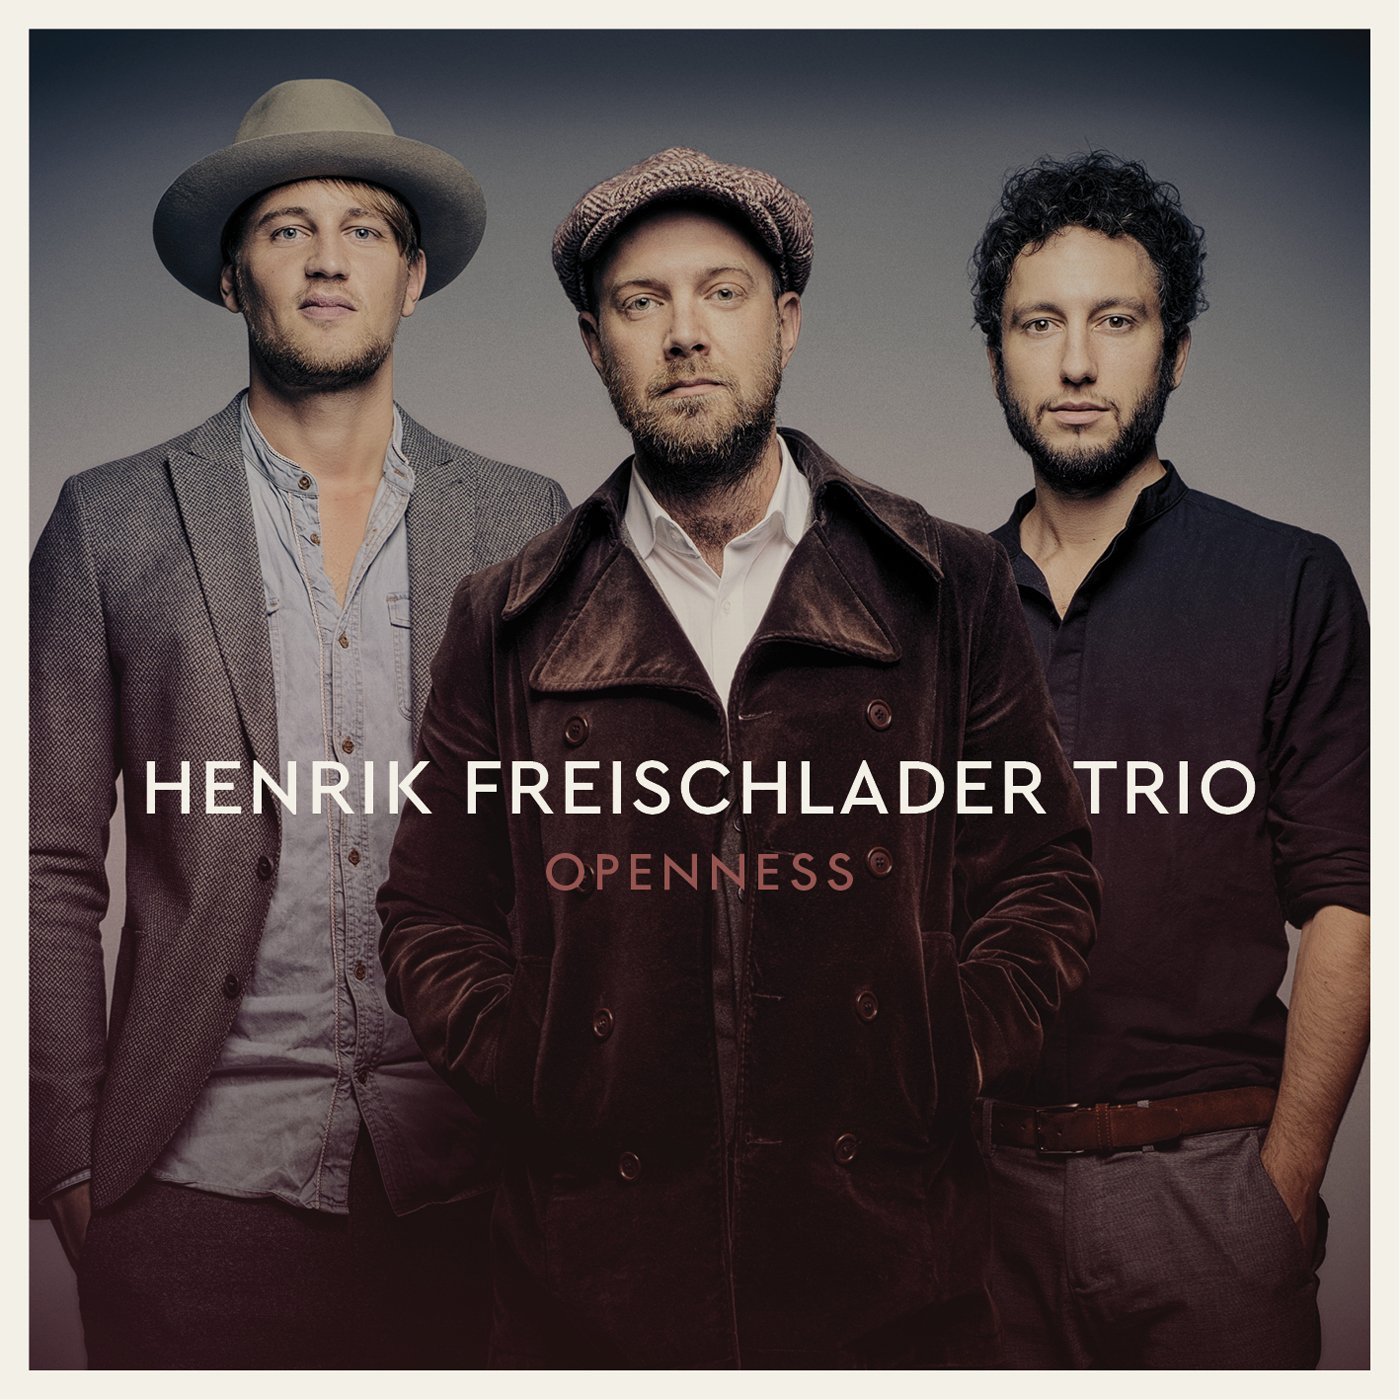 Henrik Freischlader Trio - Openness in DTS-wav (op speciaal verzoek)